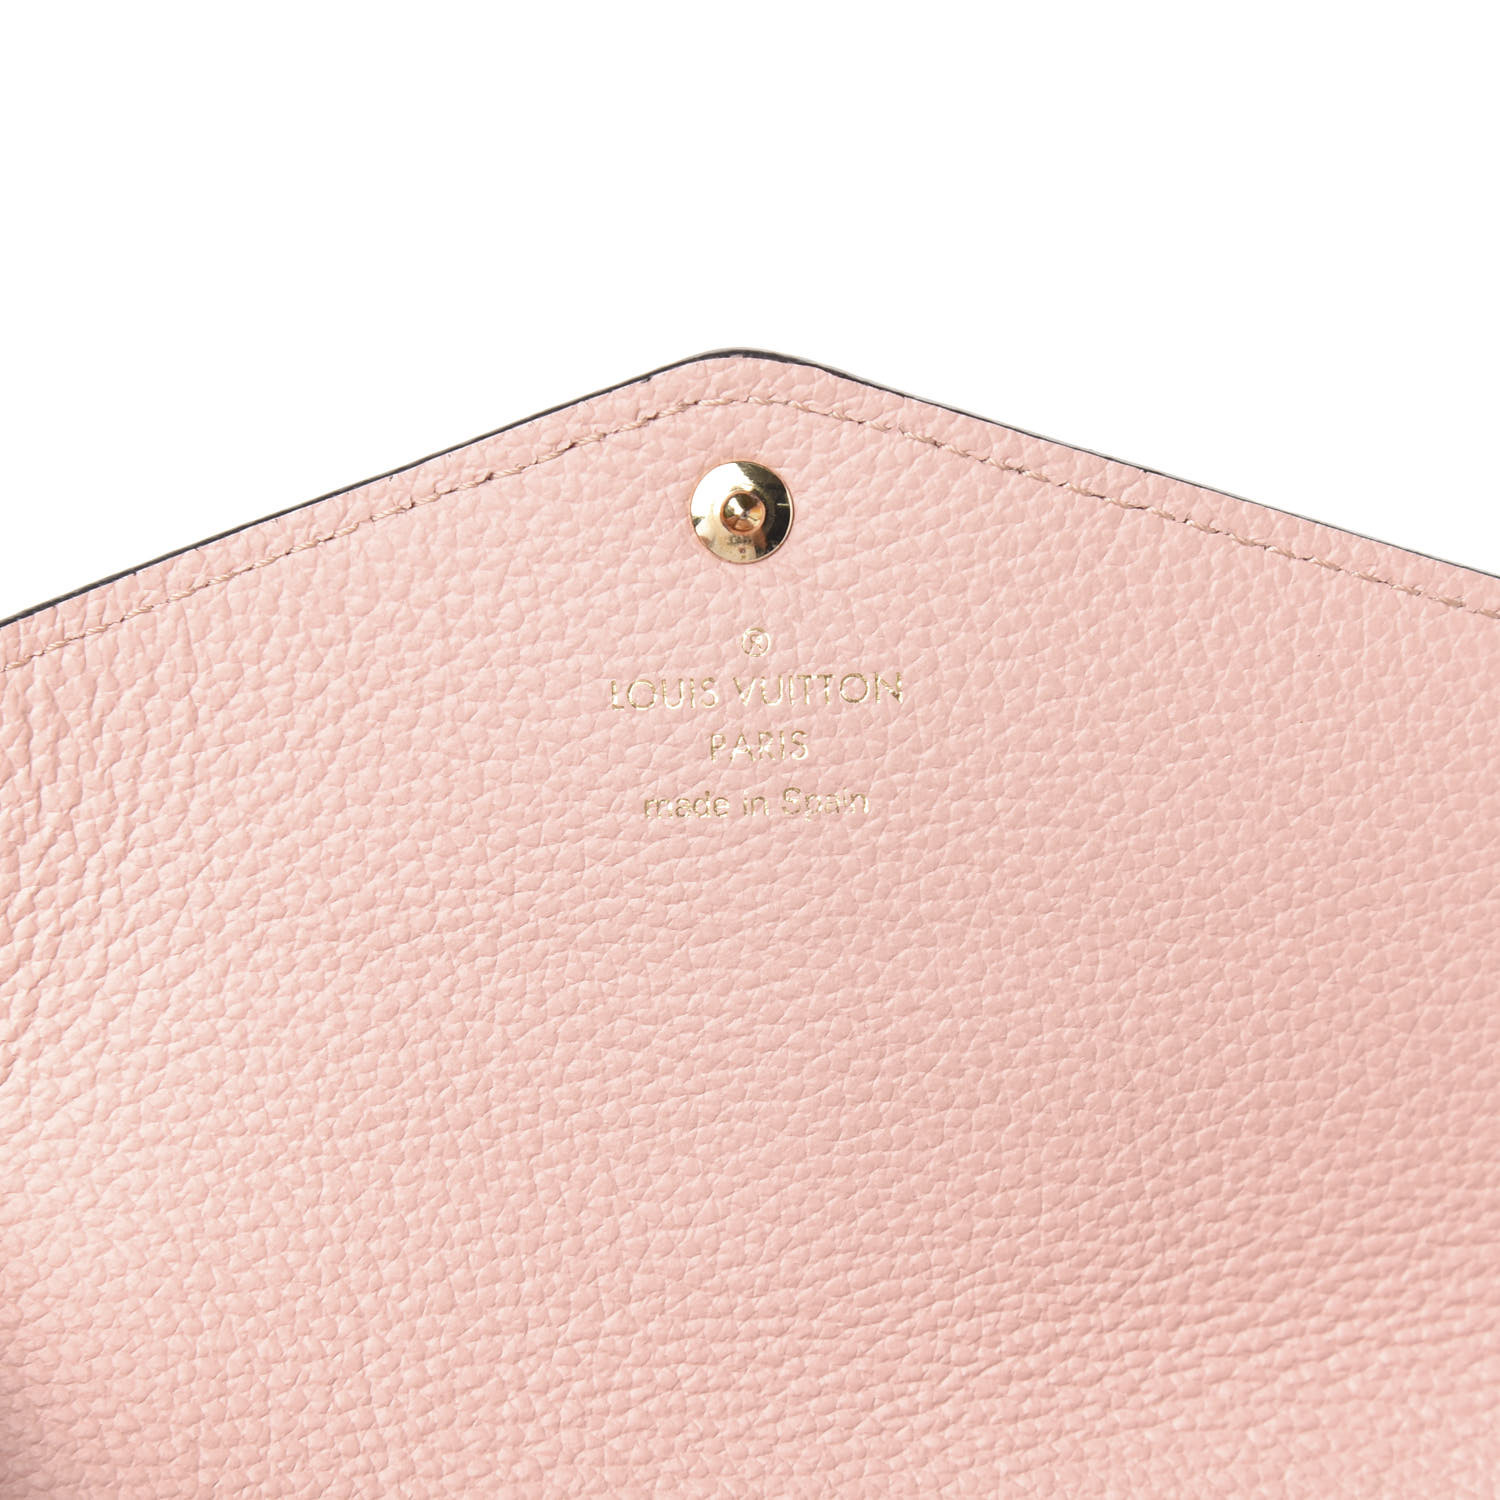 UNBOXING - Louis Vuitton Damier Azur Clemence Wallet w/ Rose